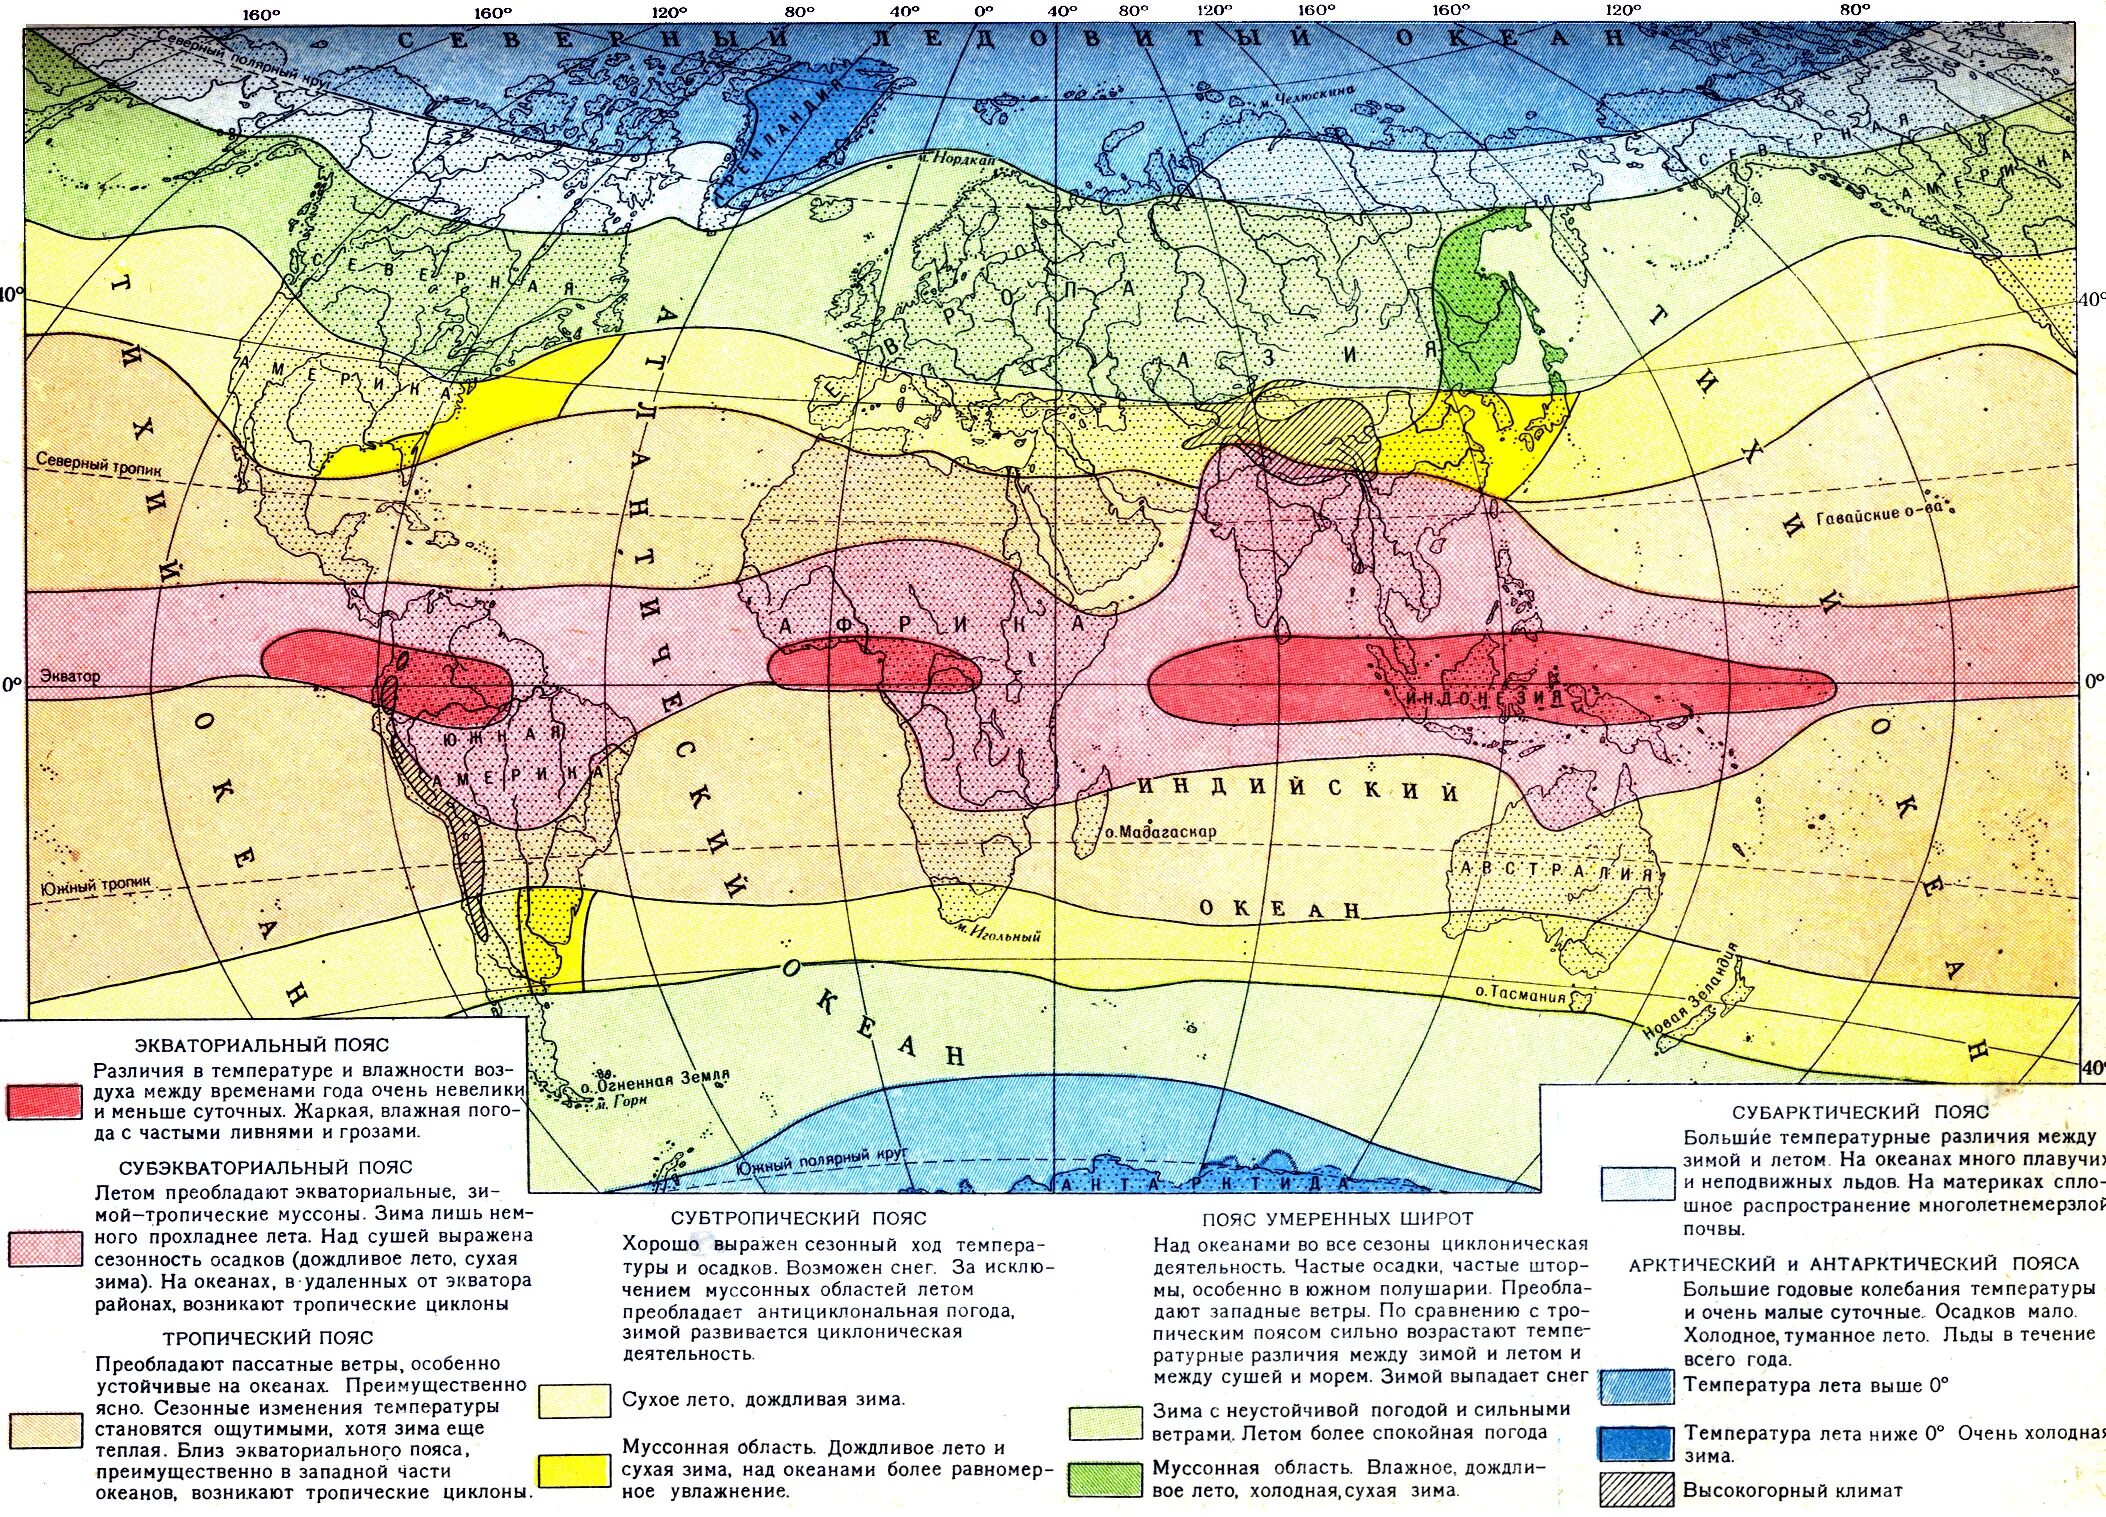 Сравнив карты физическую климатических поясов и областей